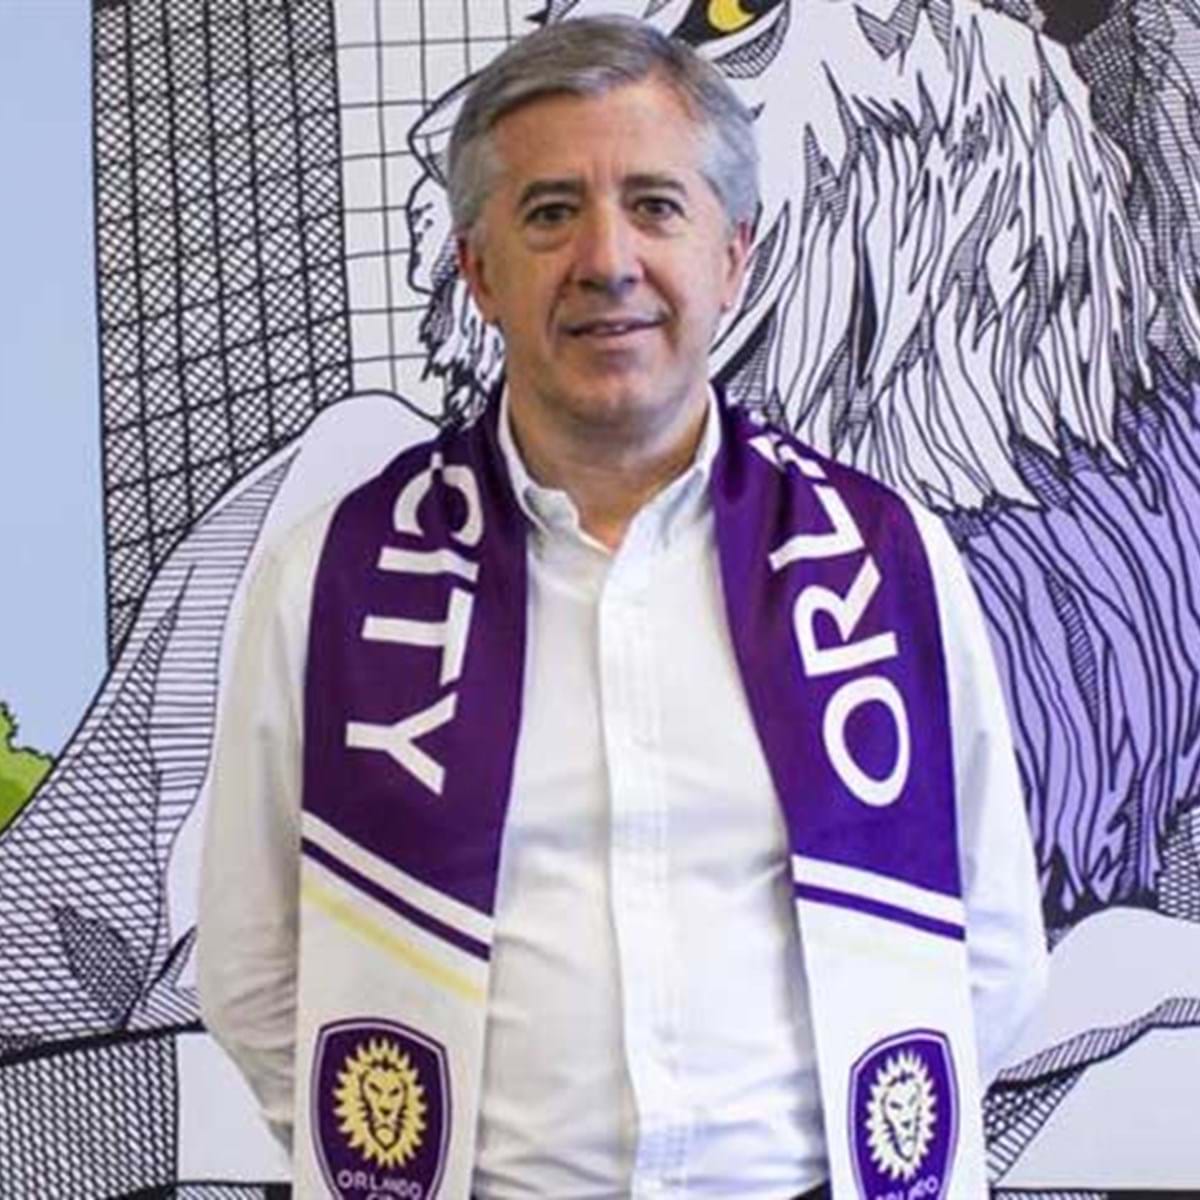 Armando Jorge Carneiro vai para o Orlando City - Benfica - Jornal